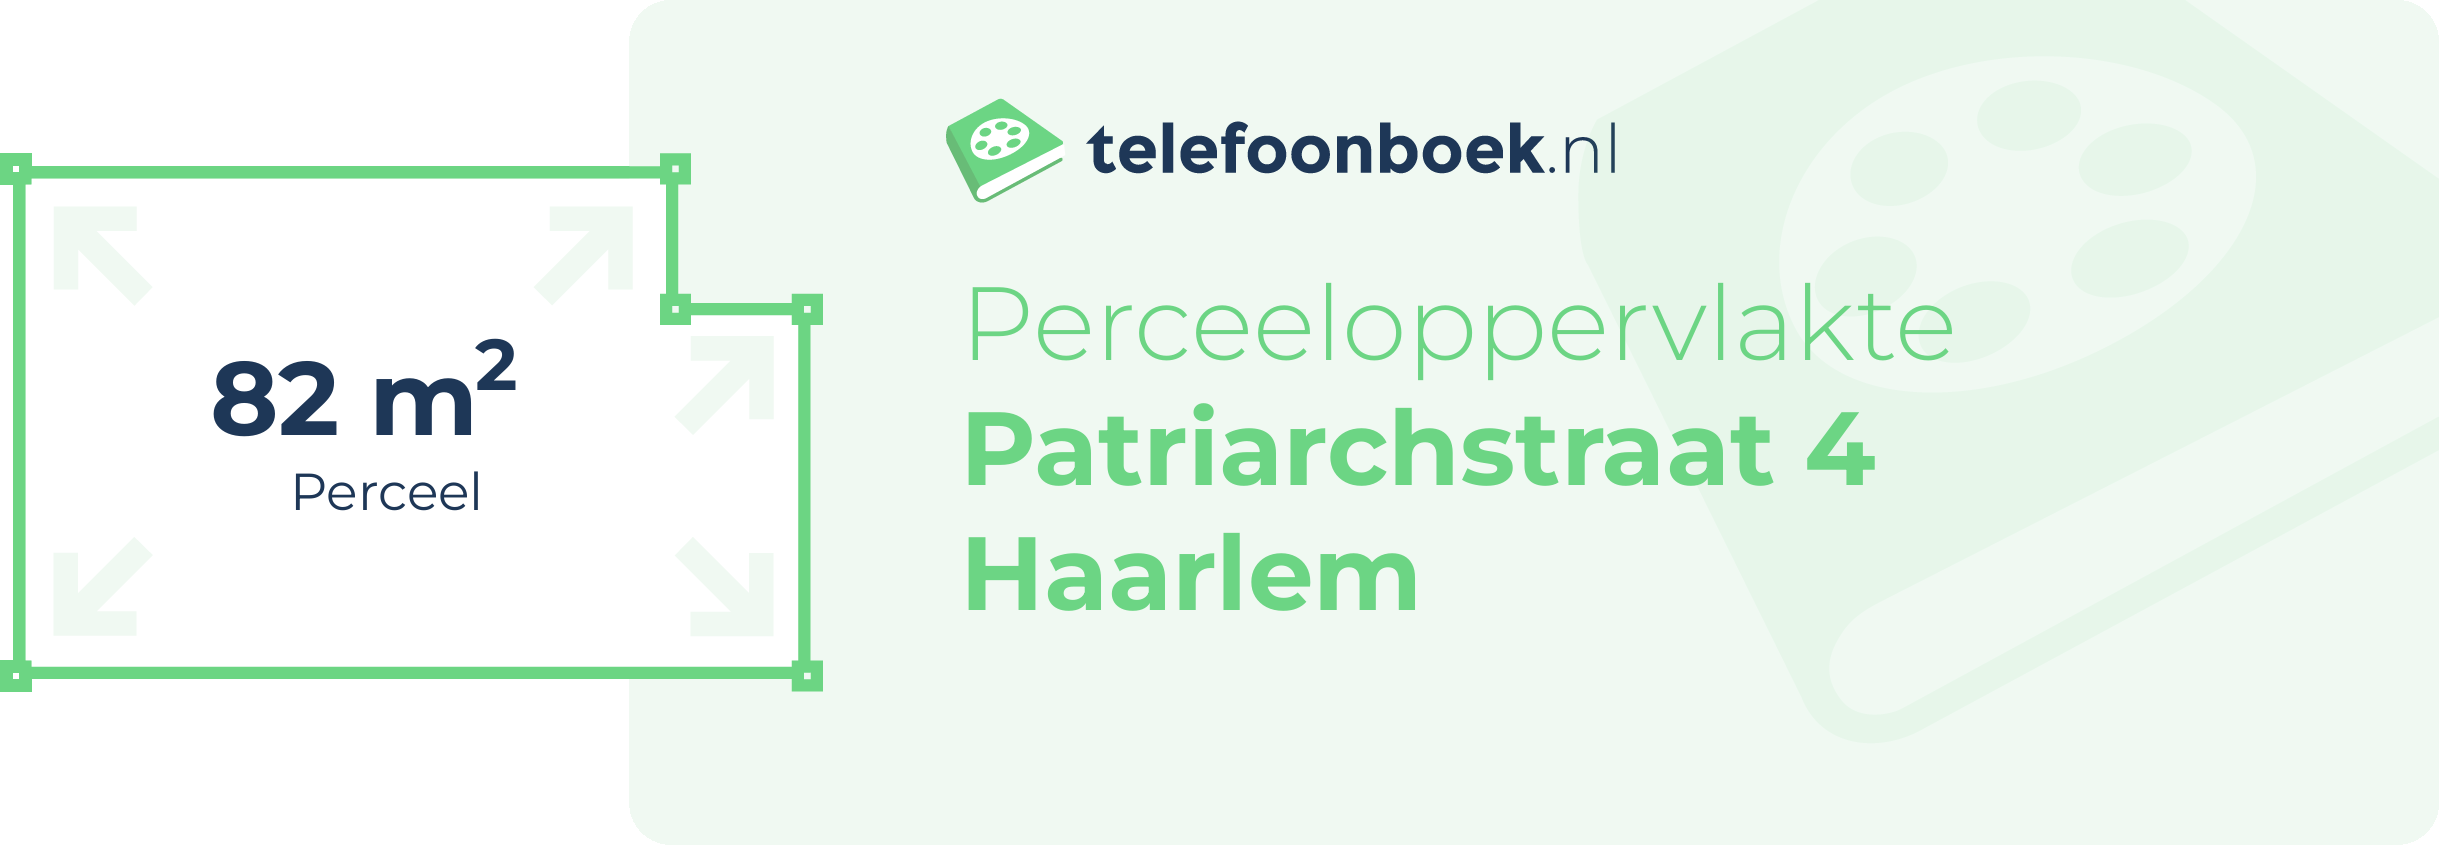 Perceeloppervlakte Patriarchstraat 4 Haarlem